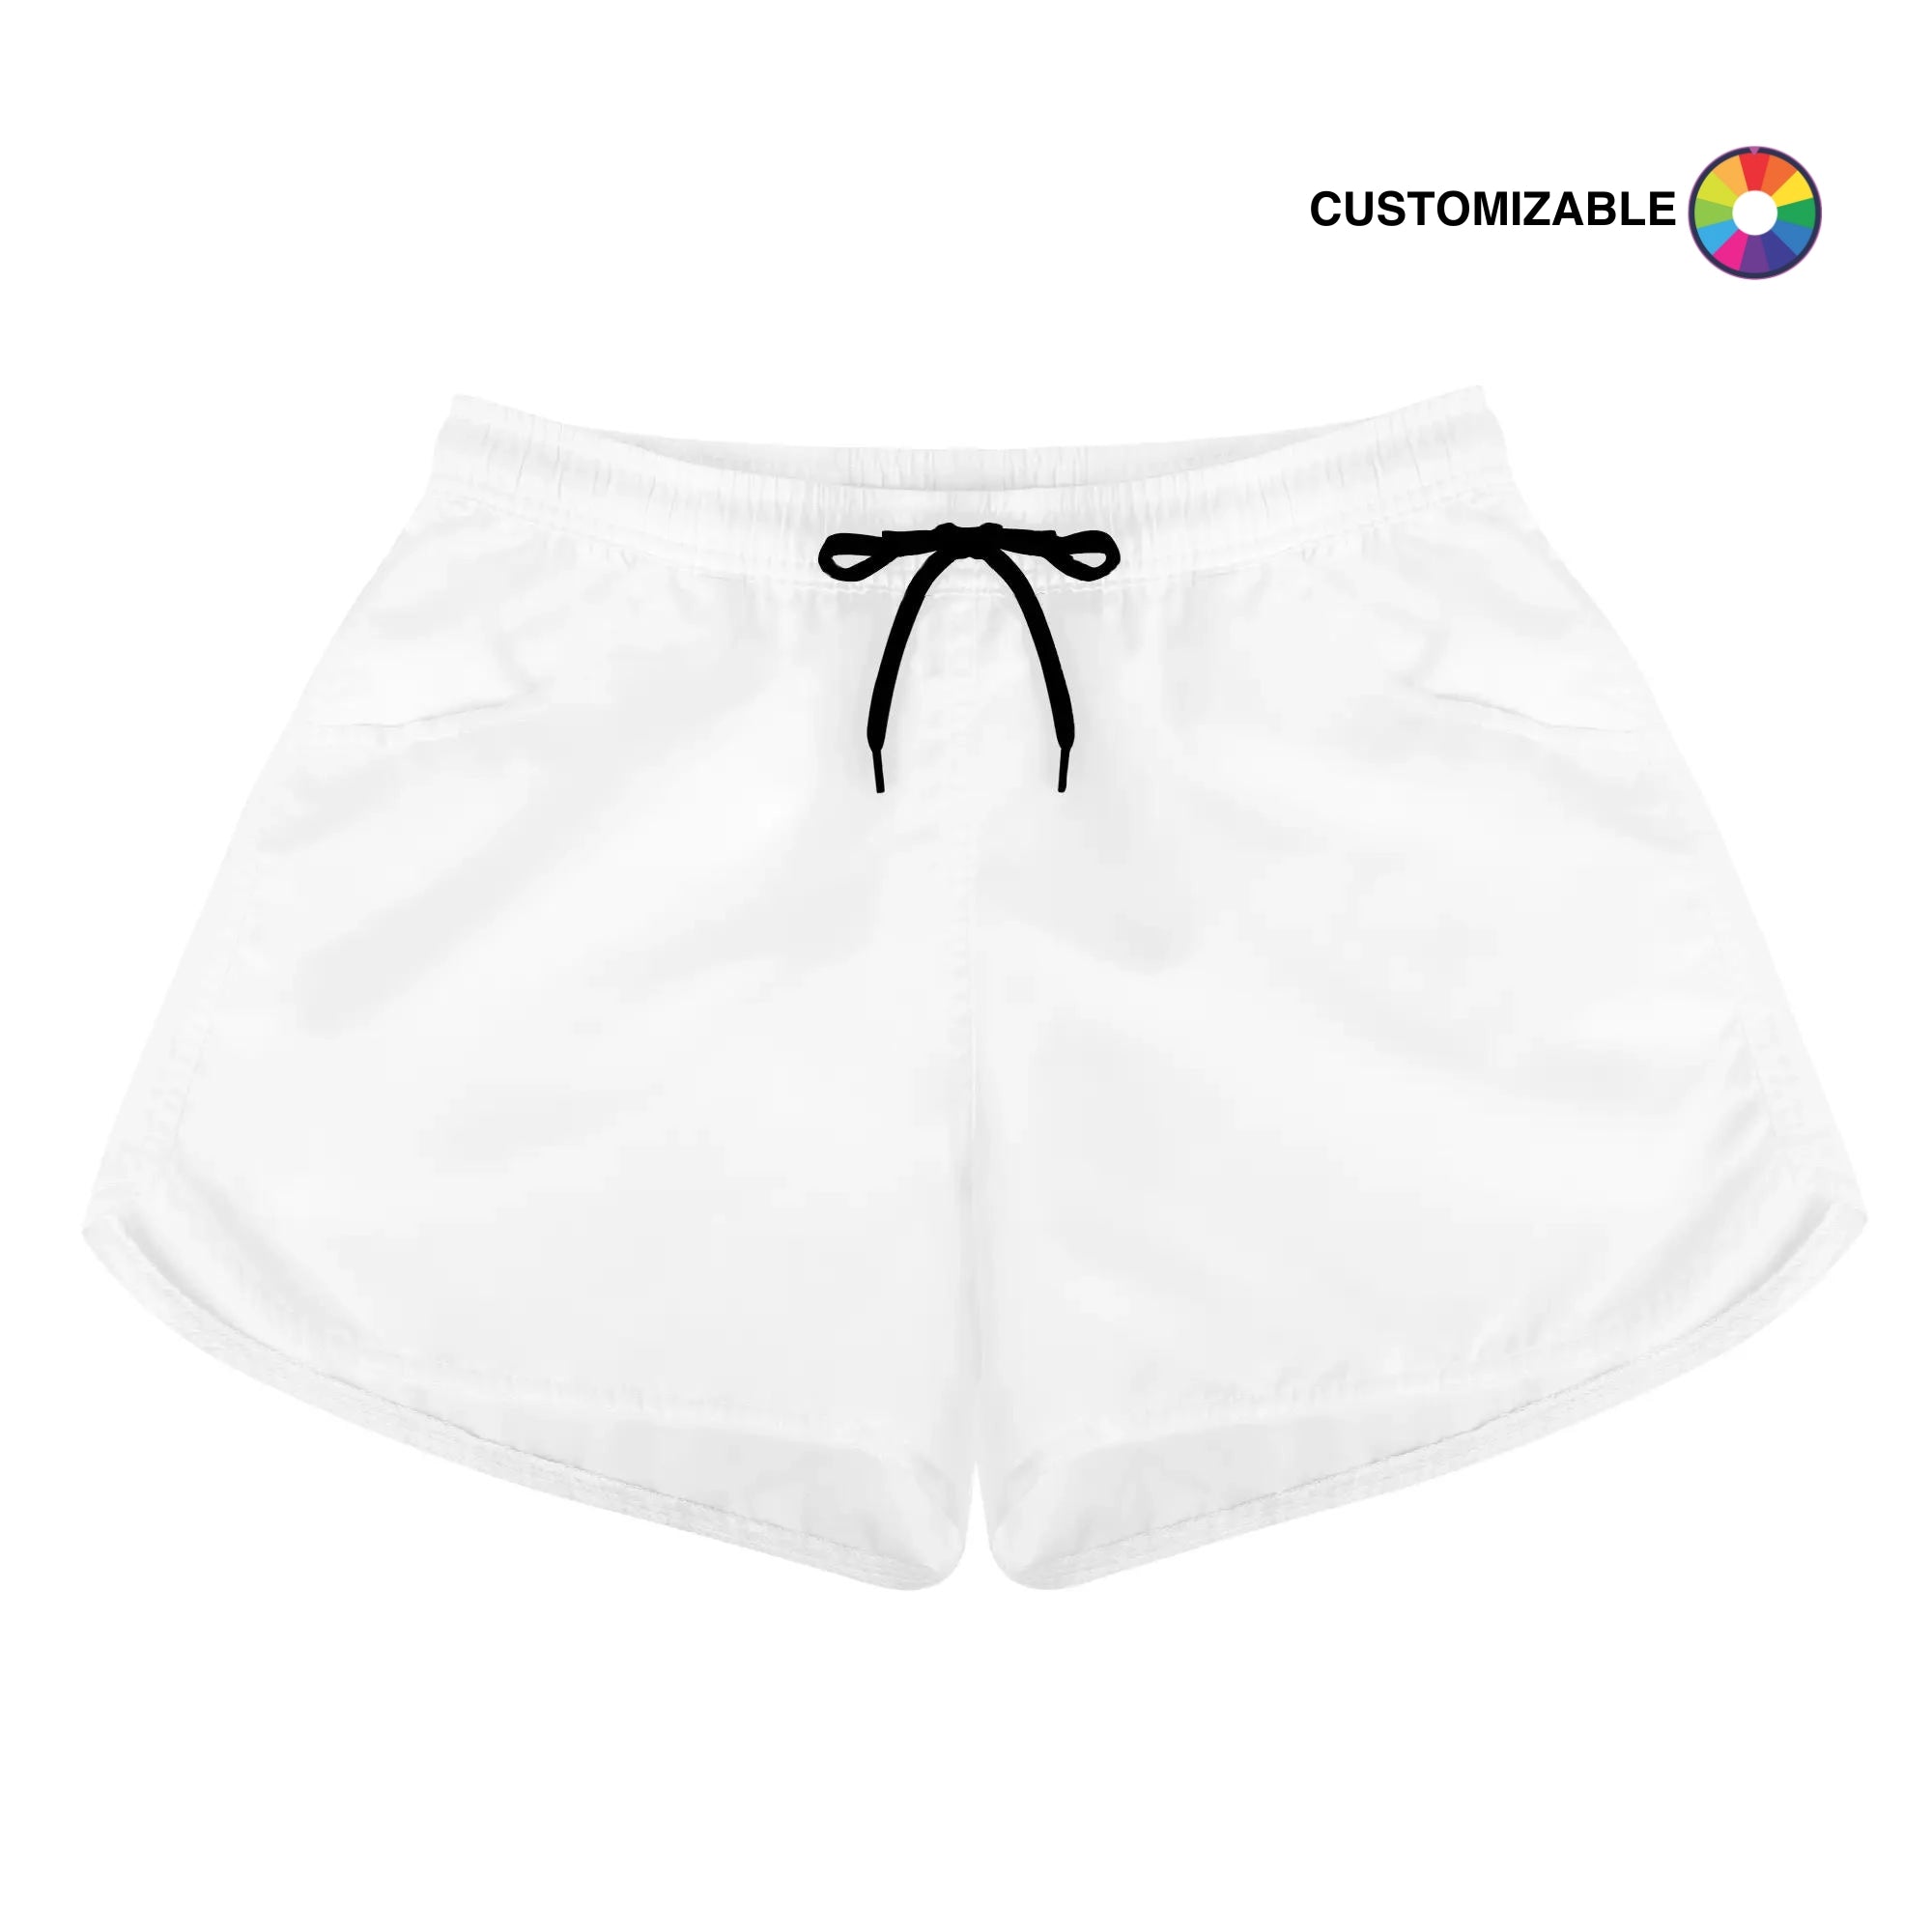 Customizable Women's Casual Shorts